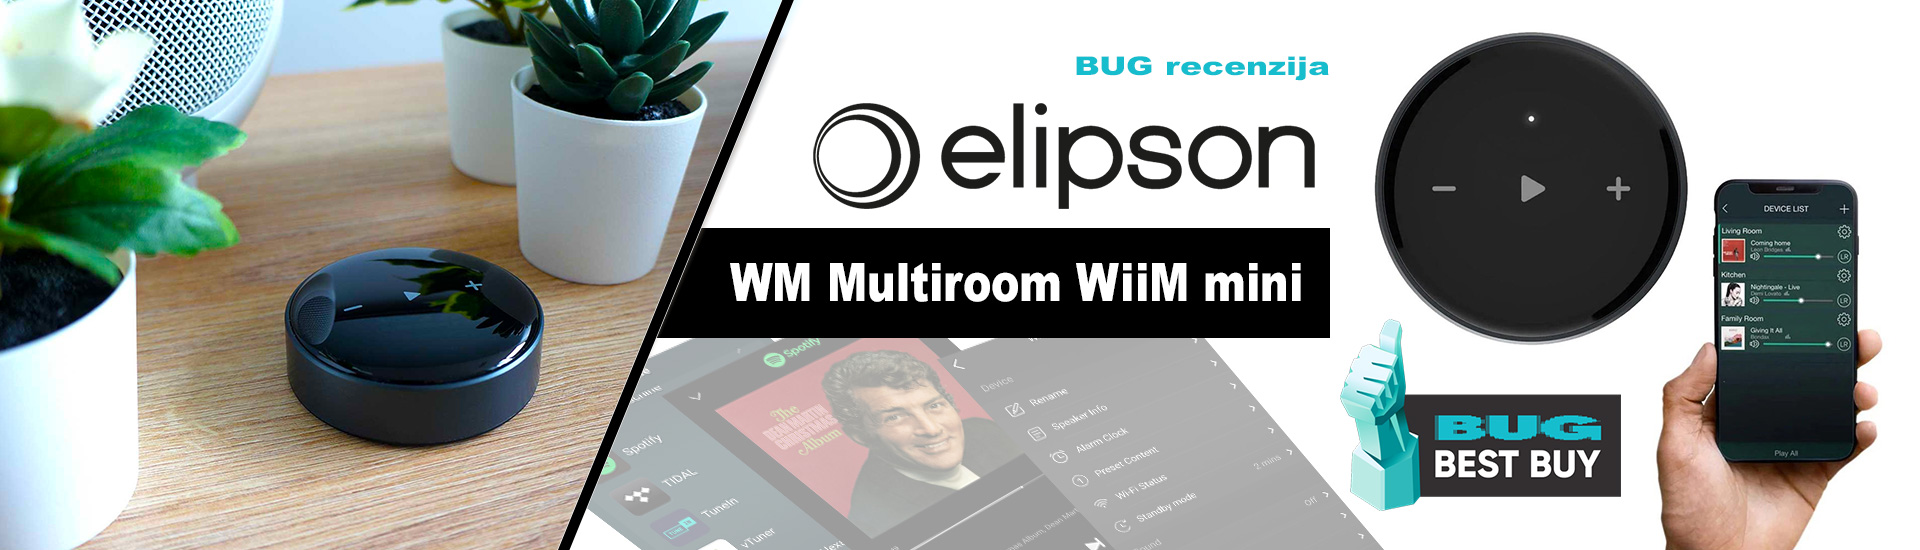 Elipson WM Multiroom WiiM mini BUG